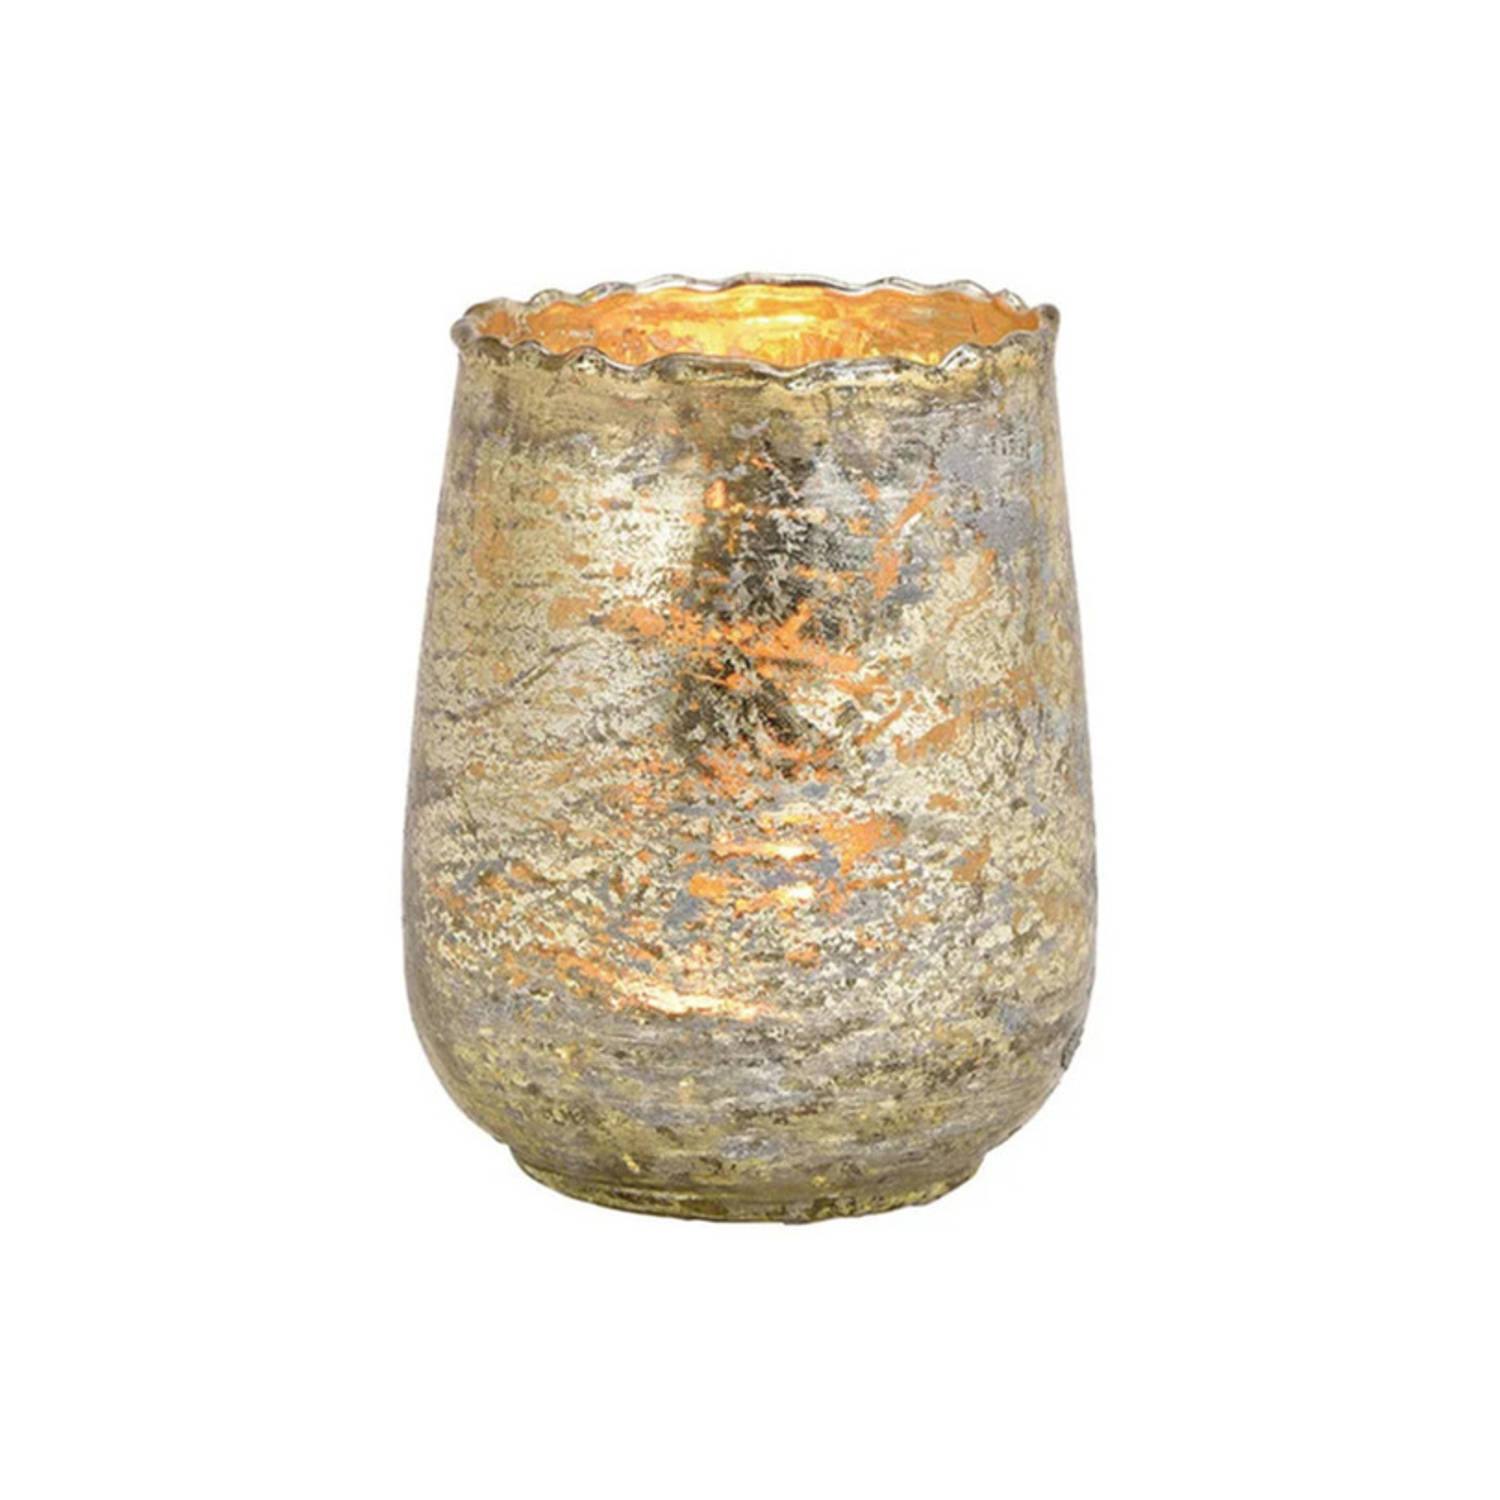 Glazen Design Windlicht-kaarsenhouder In De Kleur Champagne Goud Met Formaat 10 X 12 X 10 Cm. Voor W